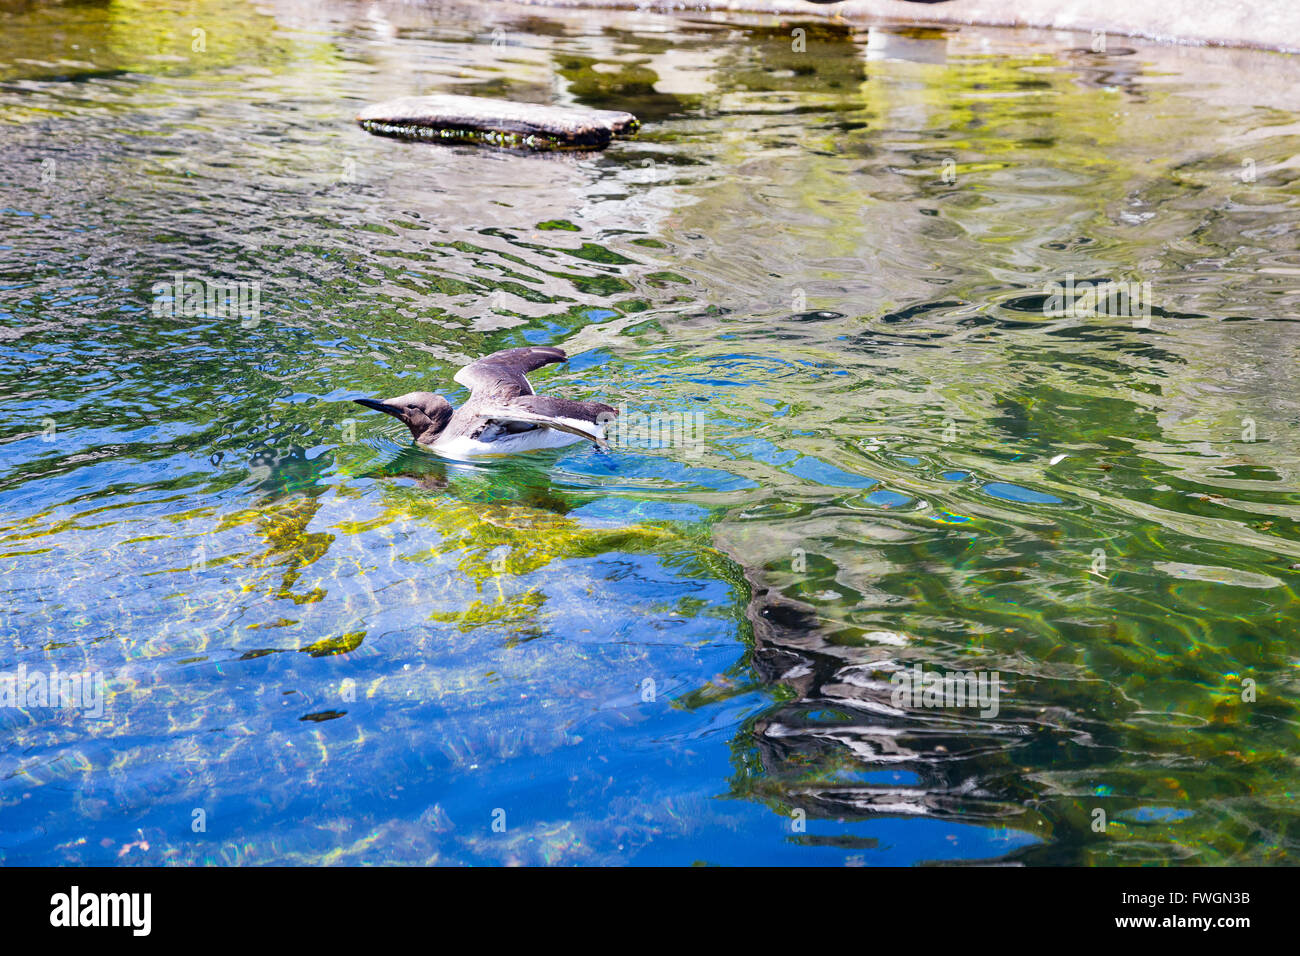 Vögel Baden und reinigen sich in einem Zoo Aquarium Tank für Wasservögel Vögel. Stockfoto